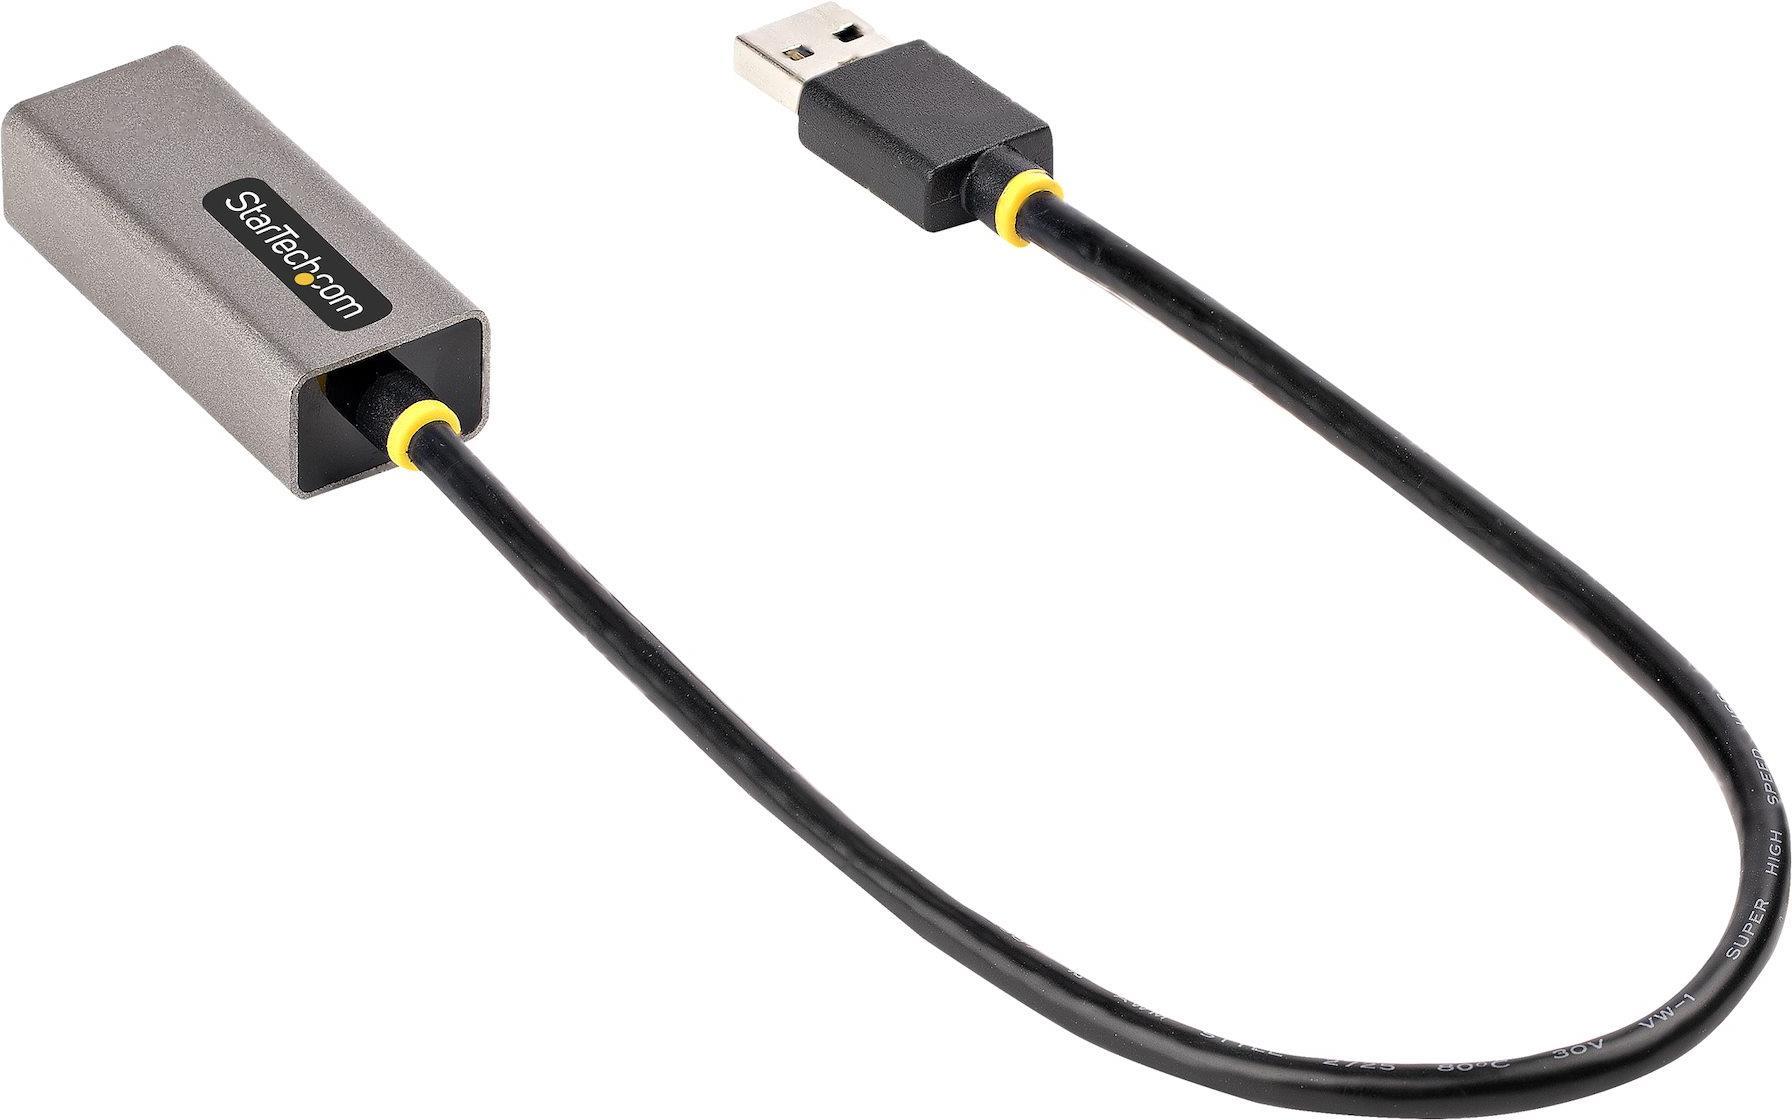 StarTech.com USB 3.0 Gigabit Ethernet Adapter - USB 3.0 zu 10/100/1000 Netzwerkadapter f�r Laptops - 30cm angeschlossenes Kabel - USB zu RJ45/LAN Adapter - NIC Adapter - Win - MacOS - Linux und Chrome OS unterst�tzt (USB31000S2) von Startech